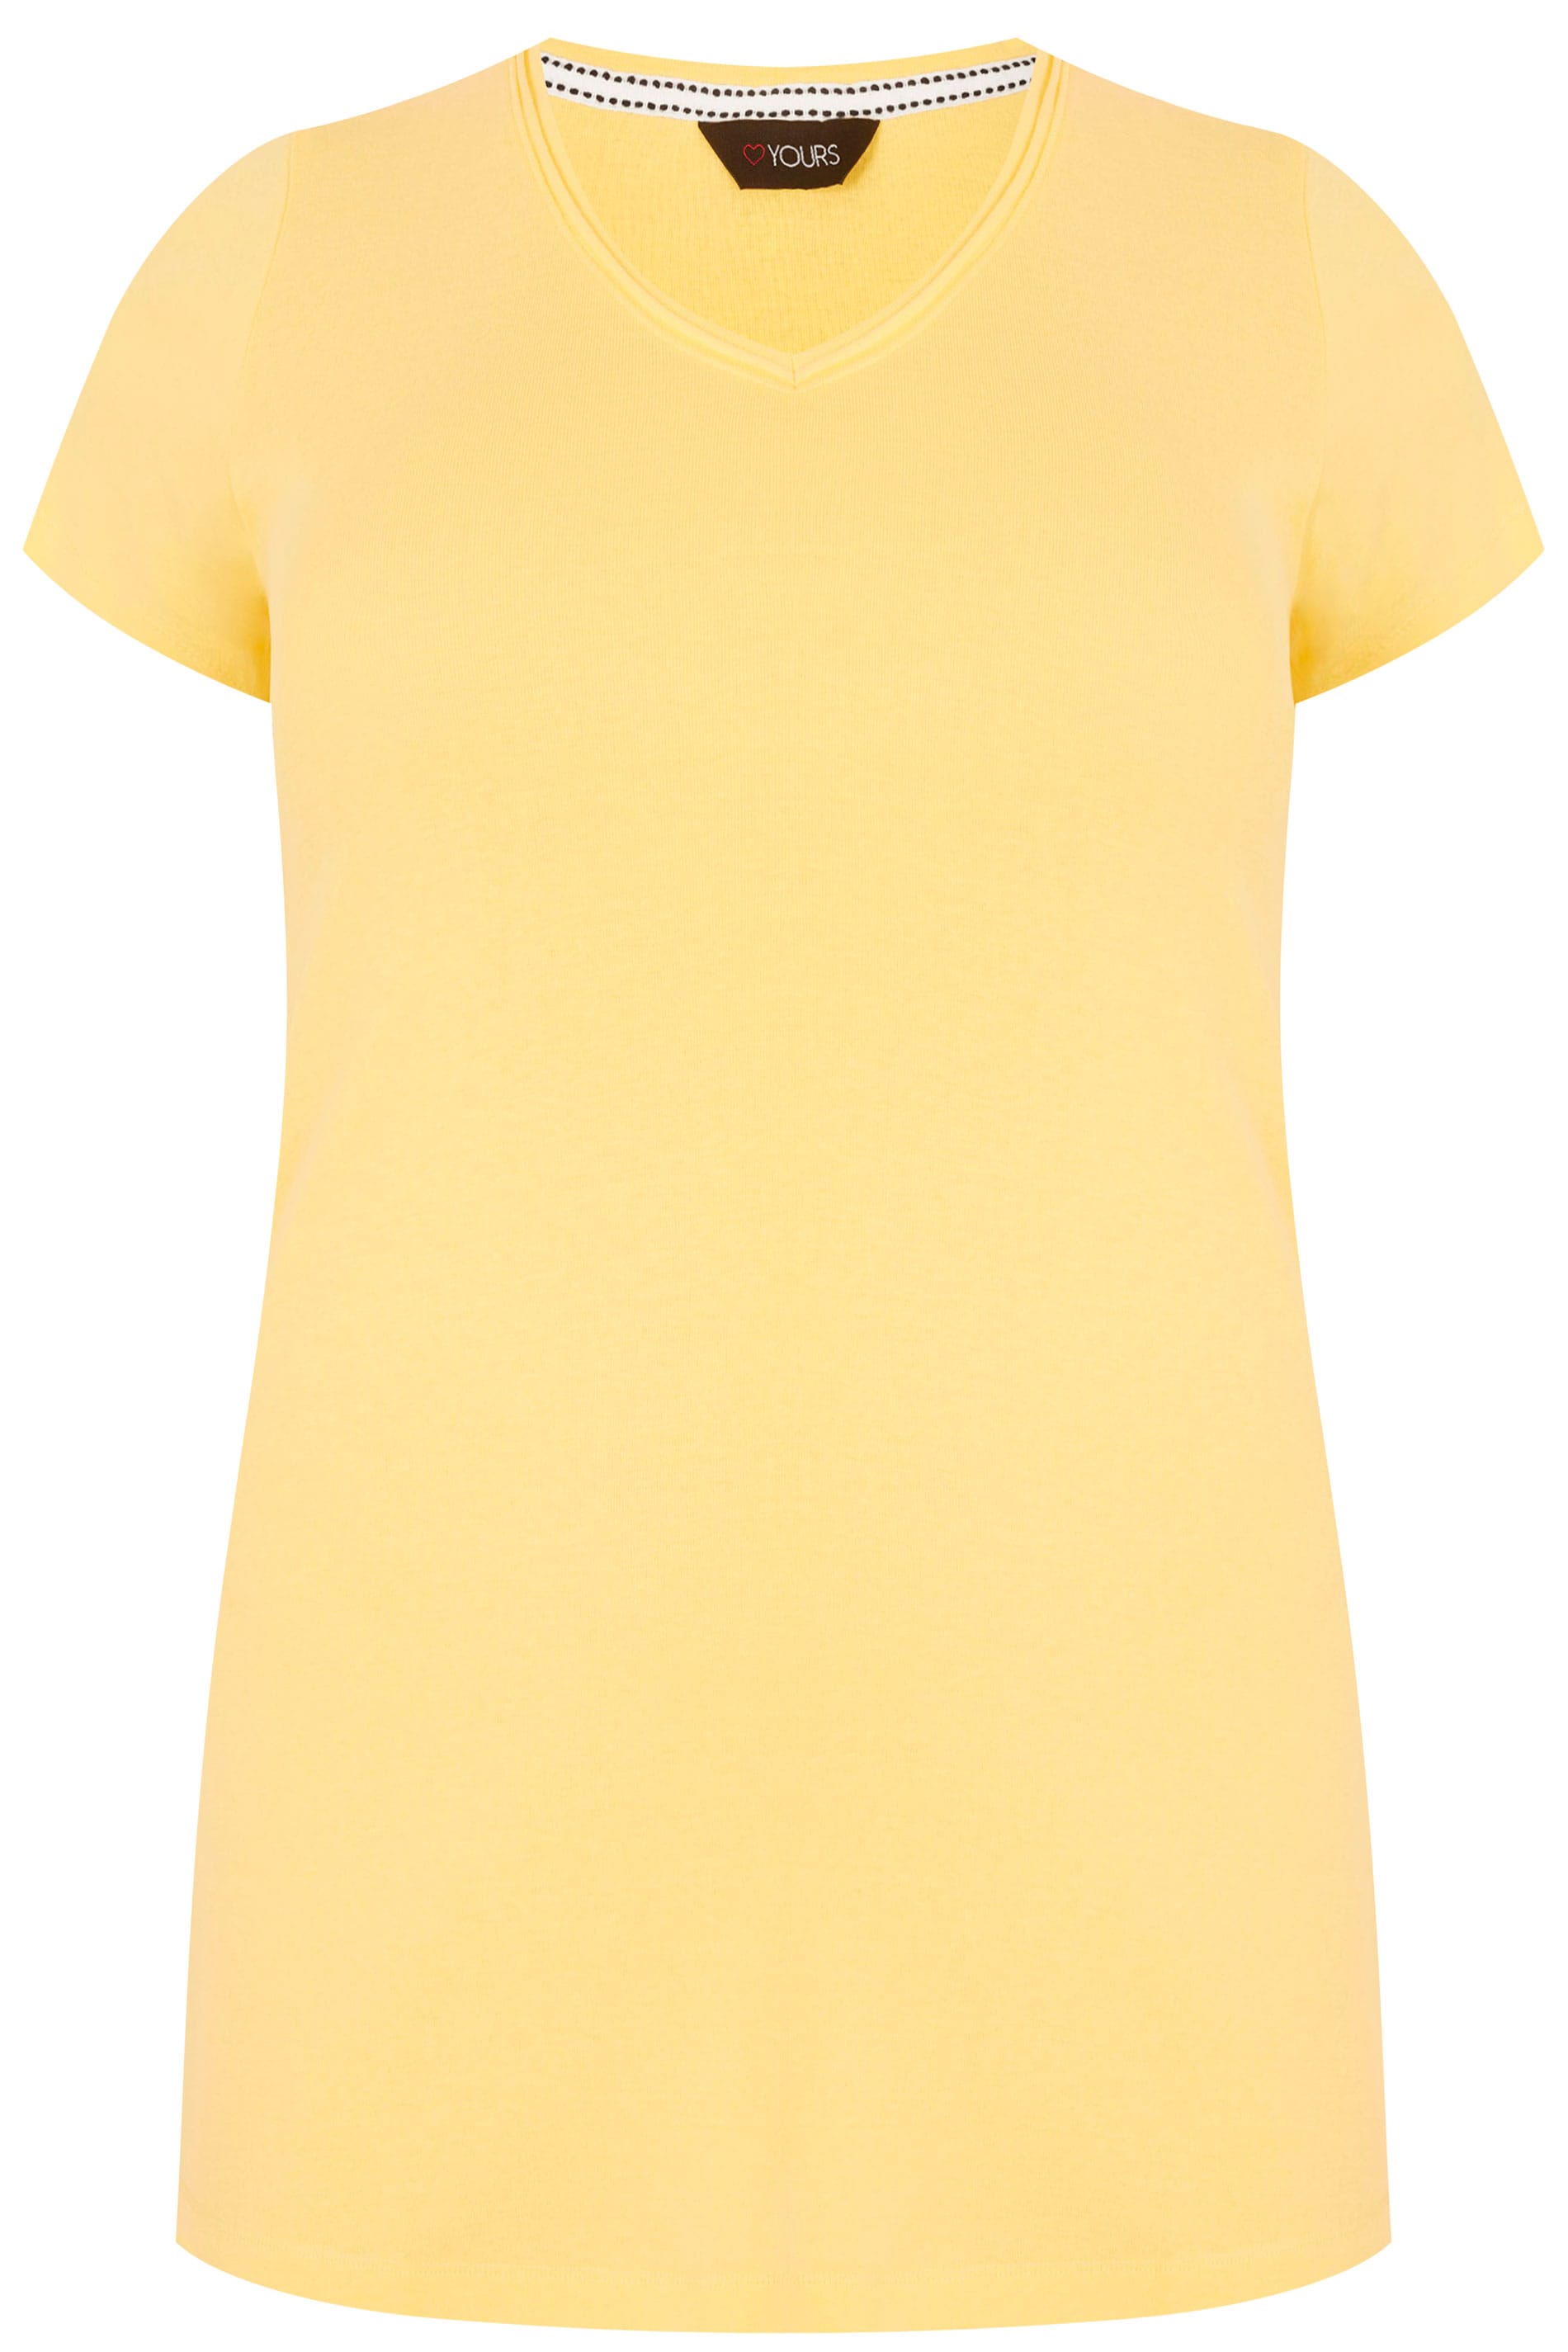 Lemon Yellow Short Sleeved V-Neck Basic T-Shirt, Plus size 16 to 36